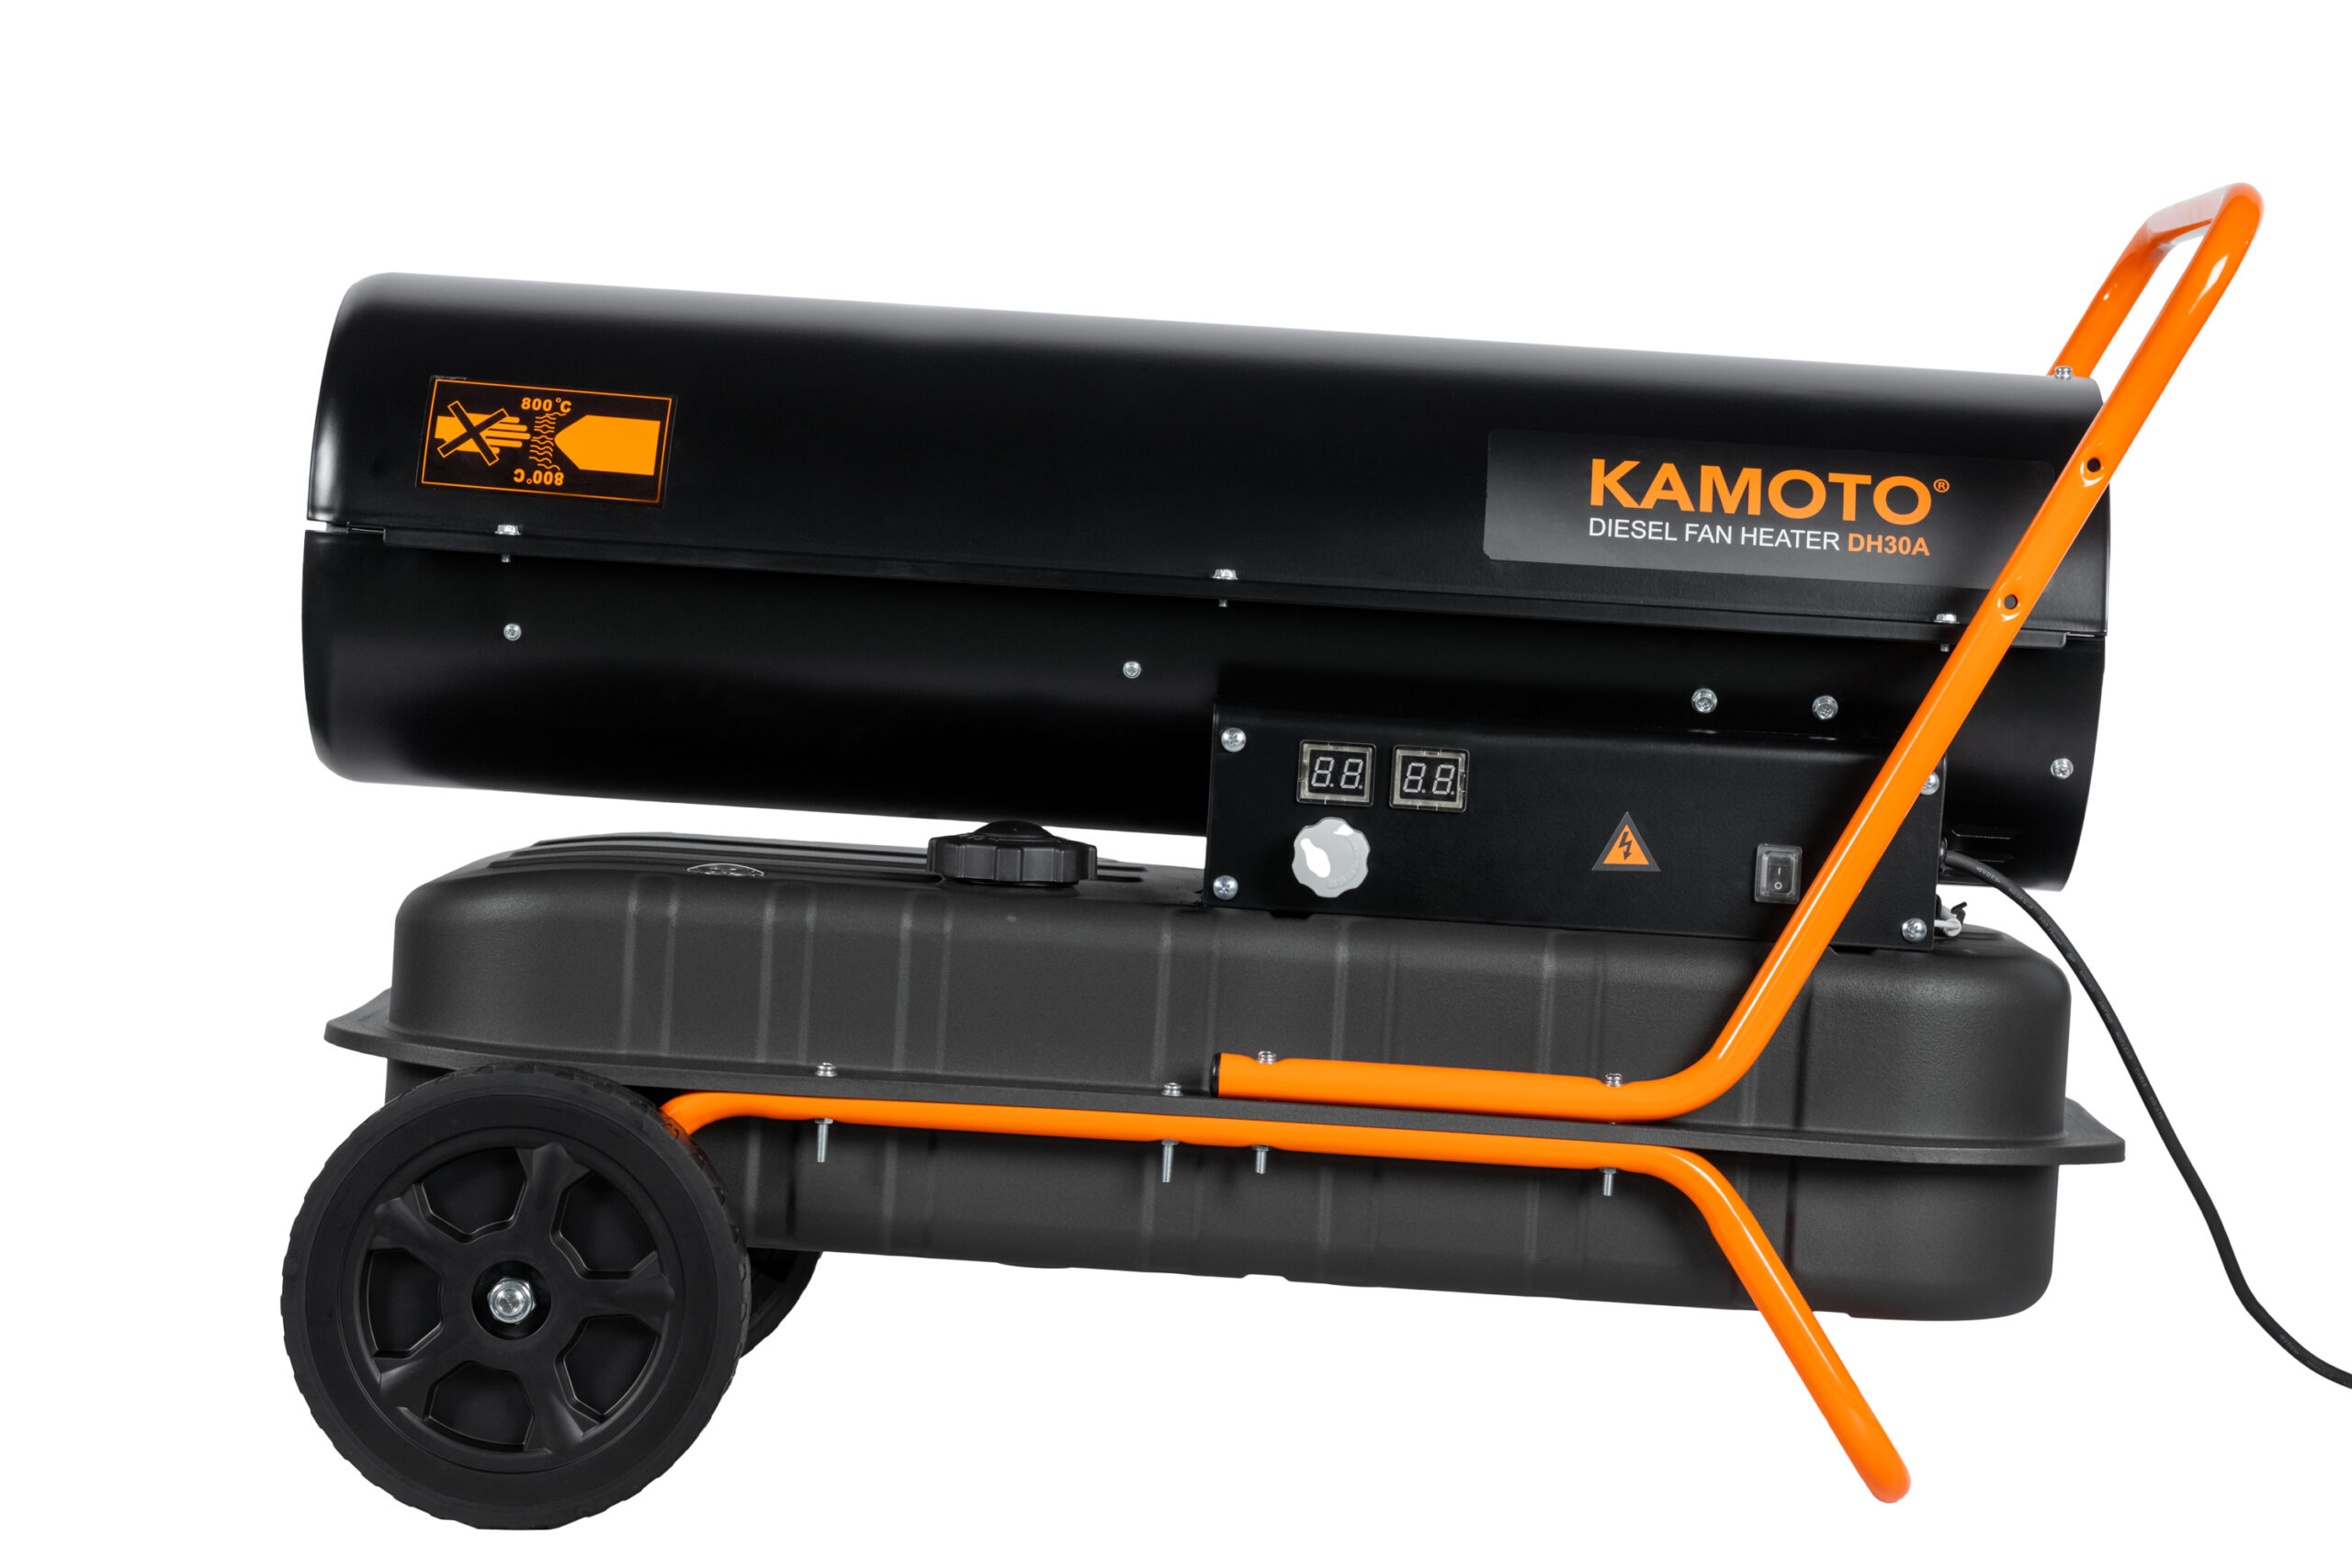 Pistol termic diesel Kamoto DH30A